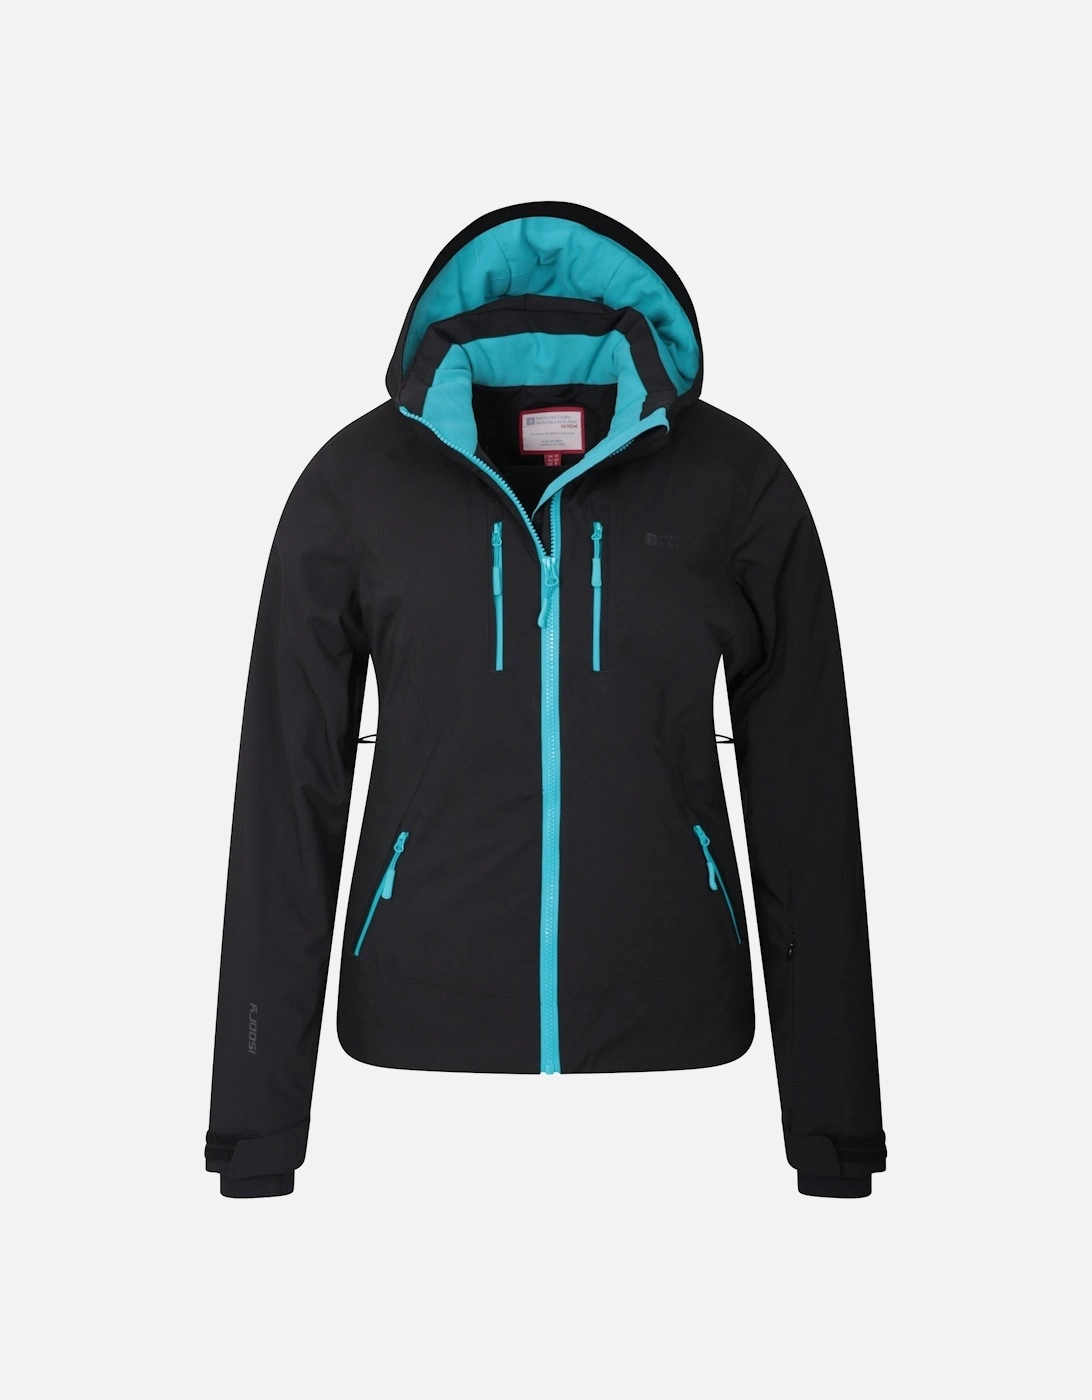 Womens/Ladies Slopestyle Extreme Slim Ski Jacket